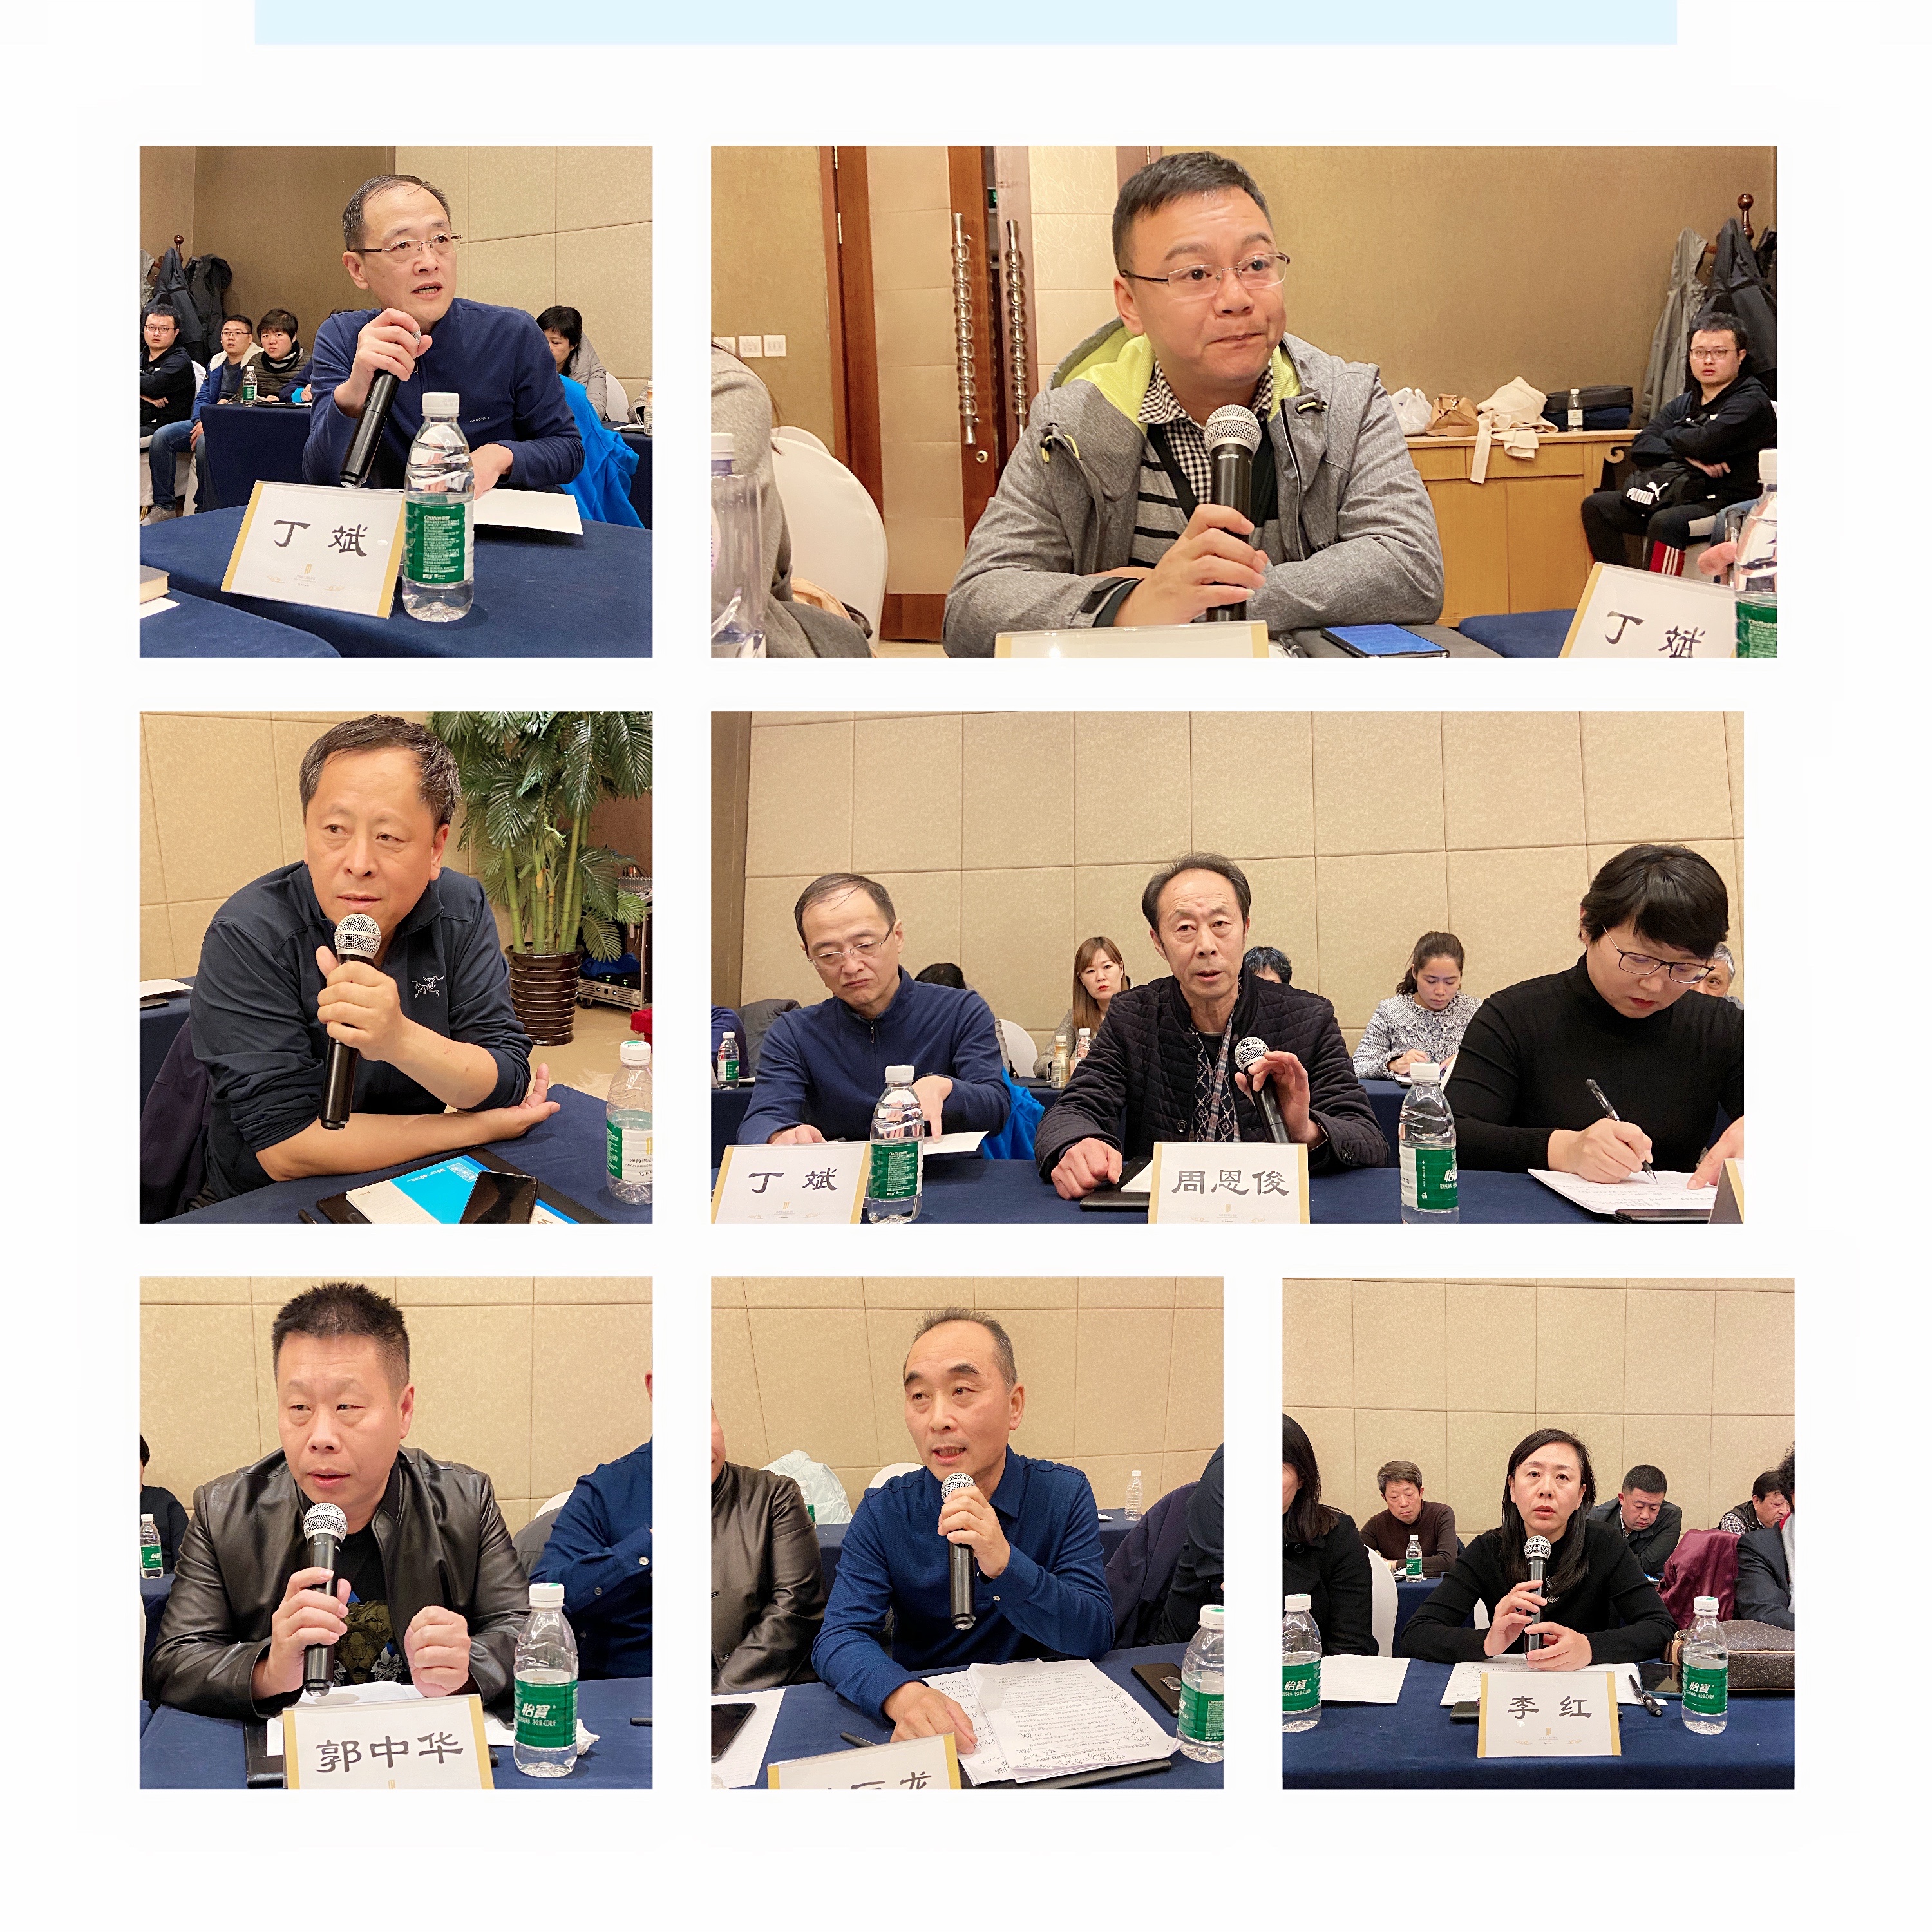 辽宁省典当行业协会召开 二届六次理事会扩大会议